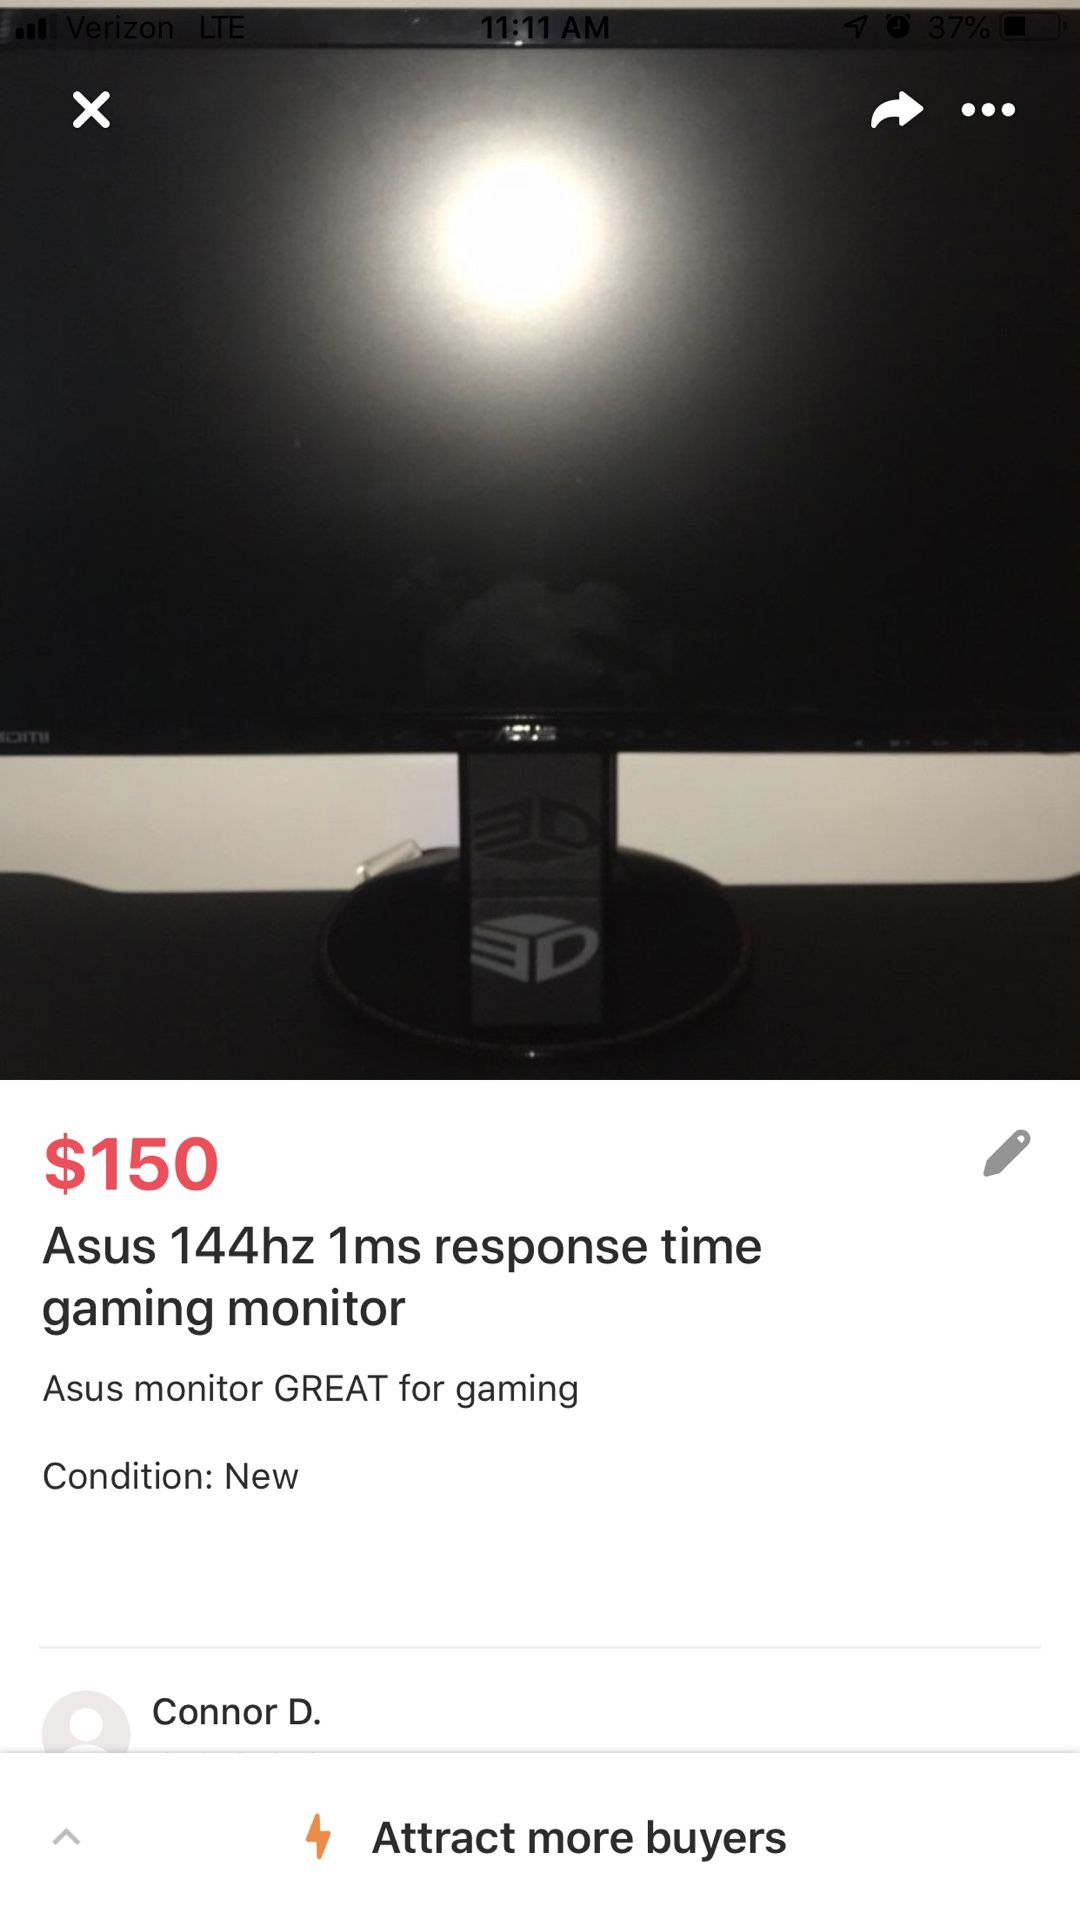 ASUS 144hz 1ms response time gaming monitor